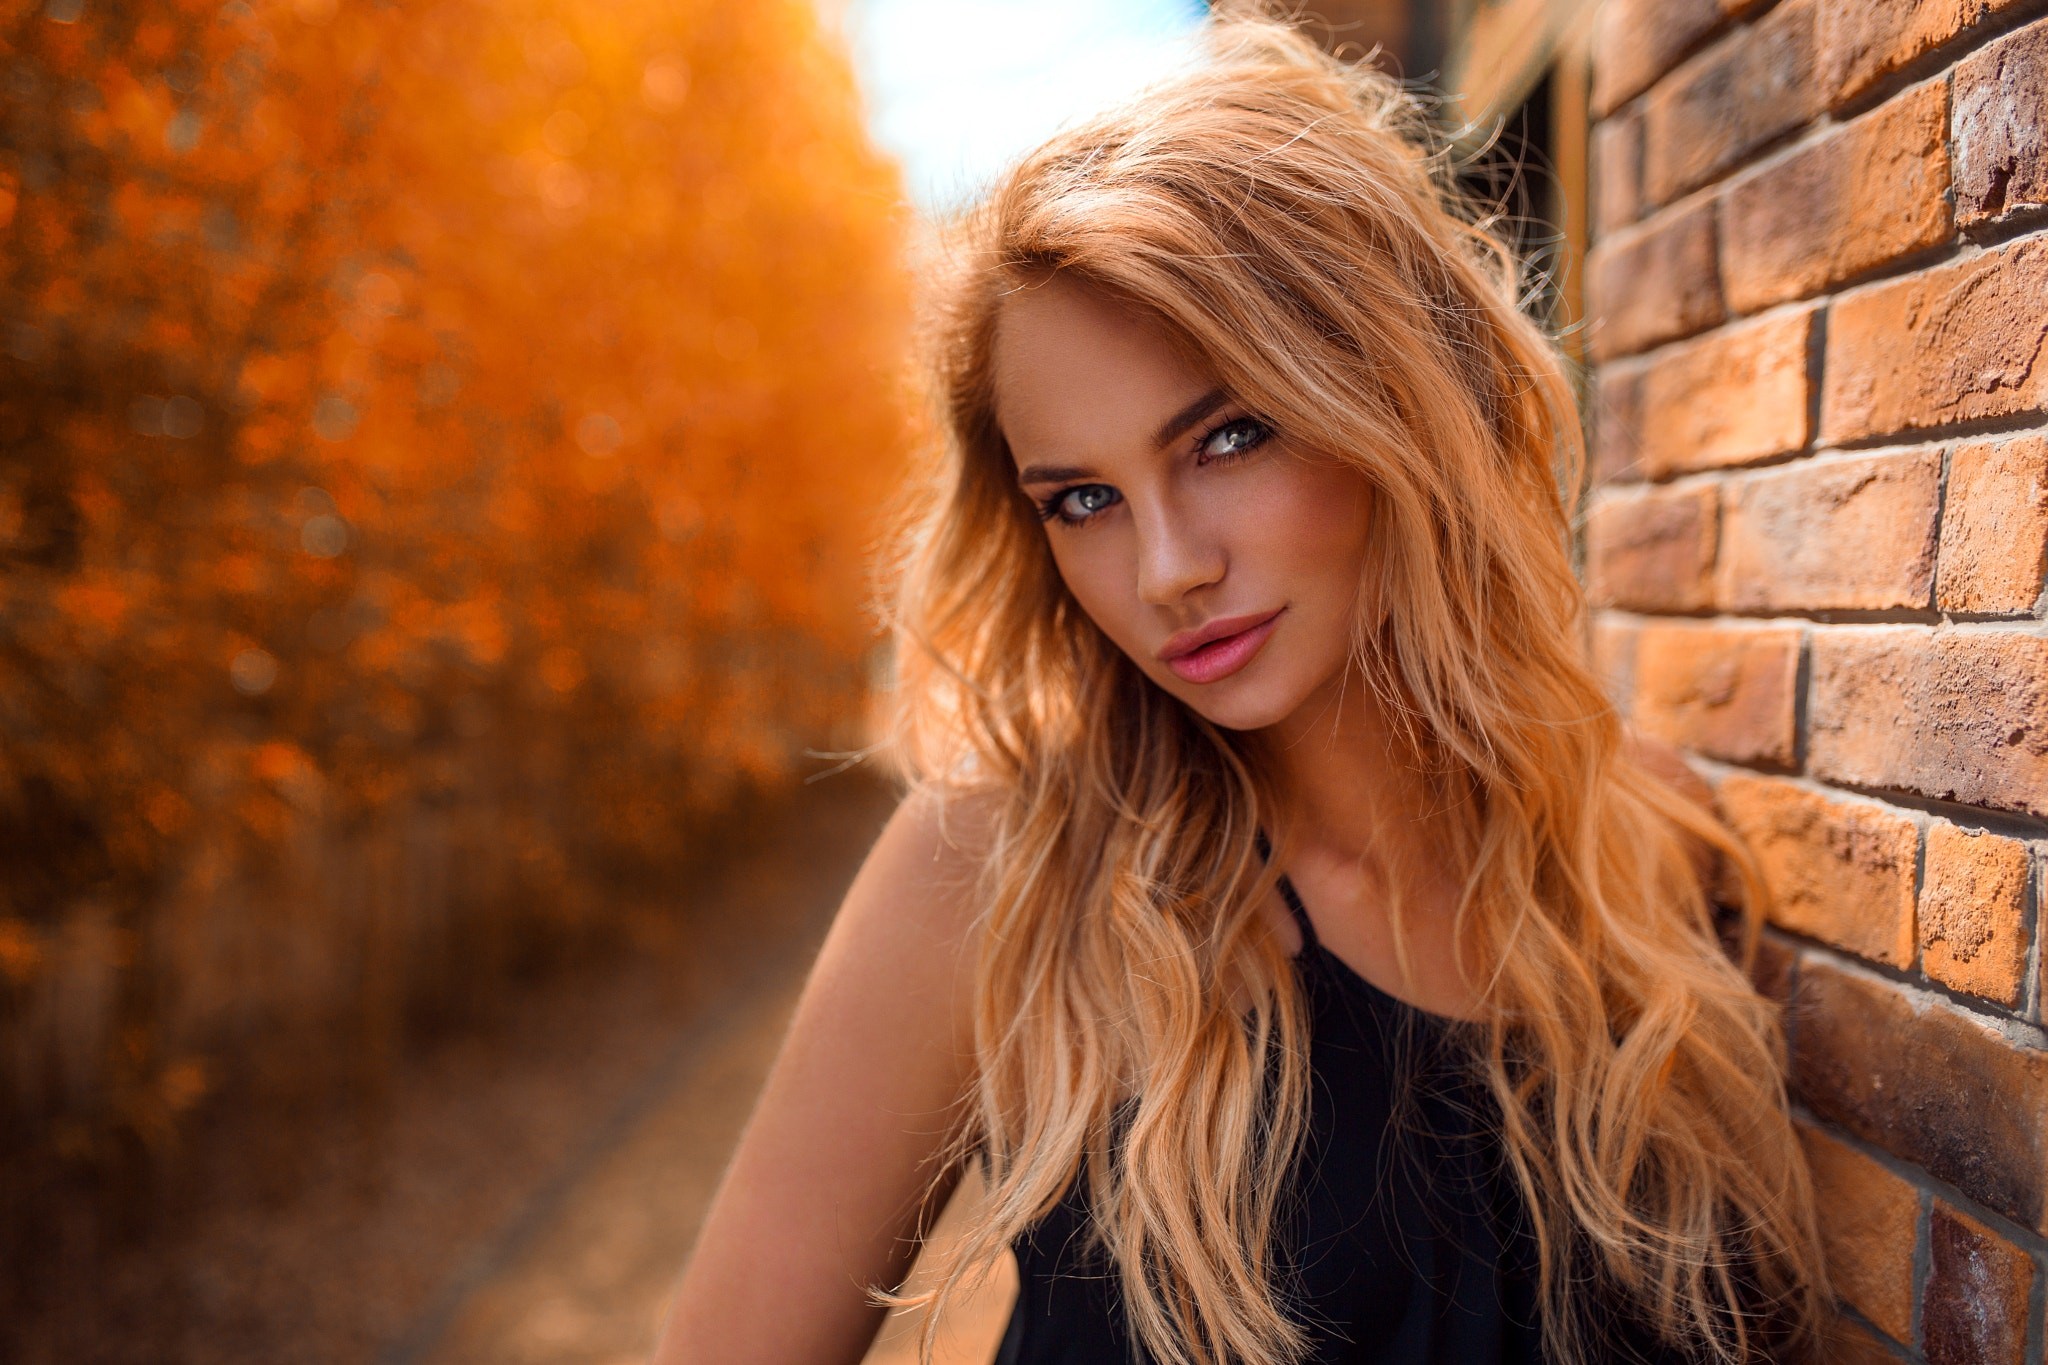 People 2048x1365 women face portrait blonde model women outdoors